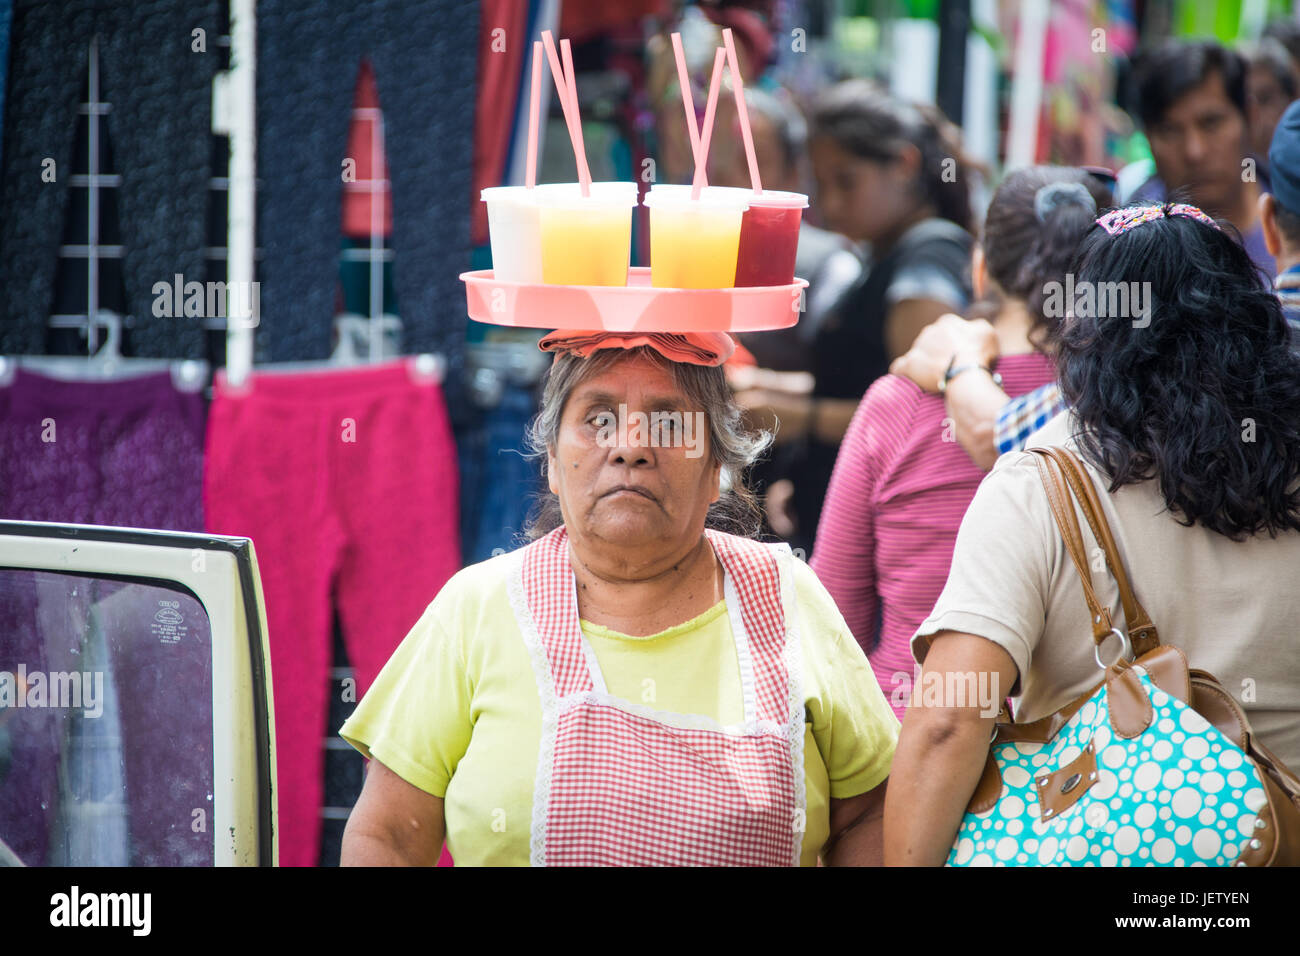 Juice vendor, Mercado Benito Juarez, Oaxaca, Mexico Stock Photo